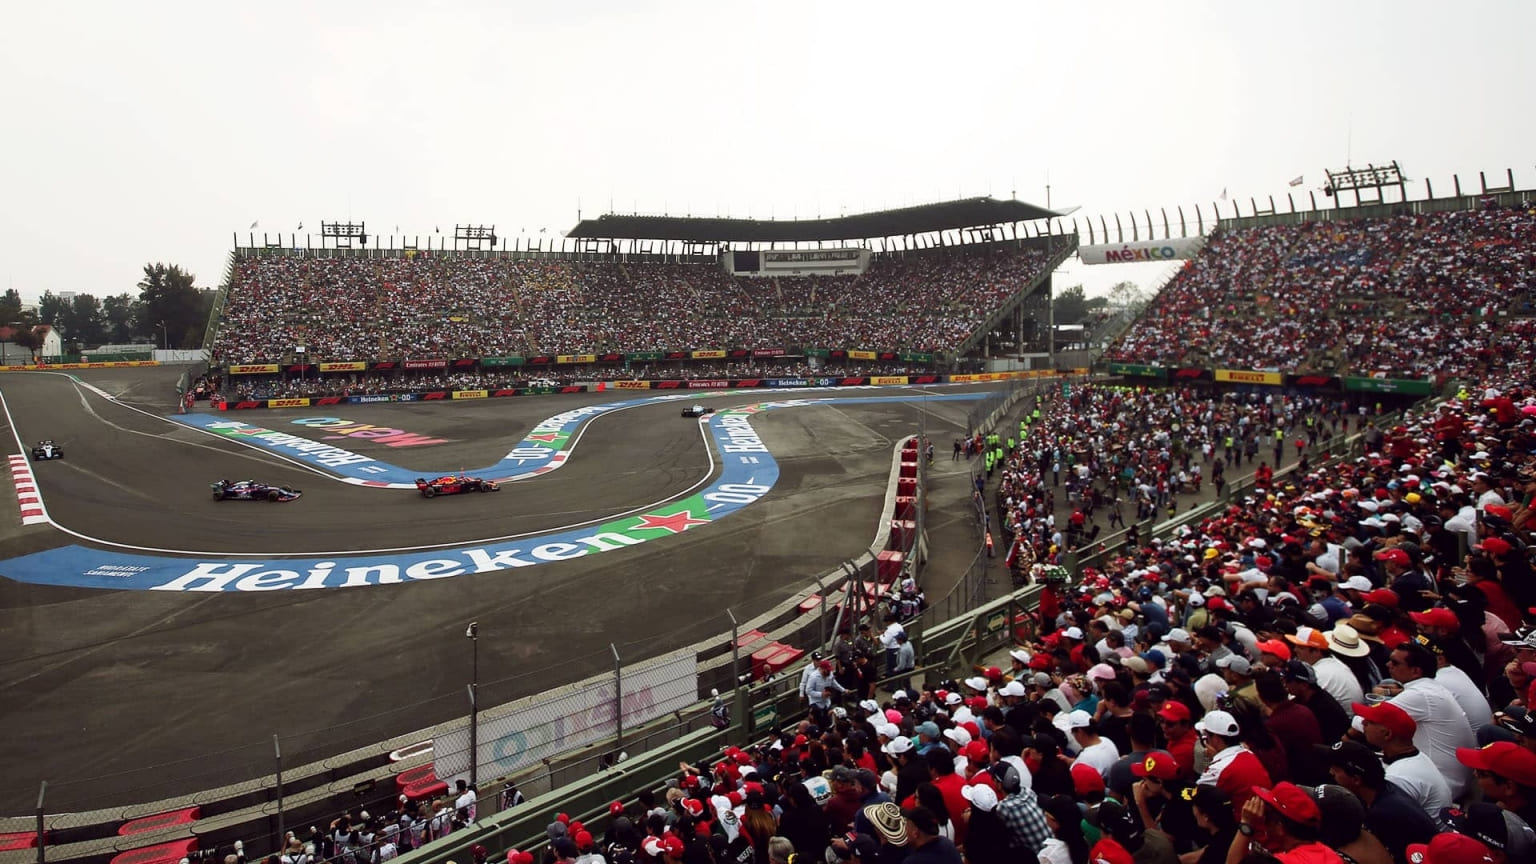 Treino 1 do GP do México: horário e onde assistir ao vivo, fórmula 1